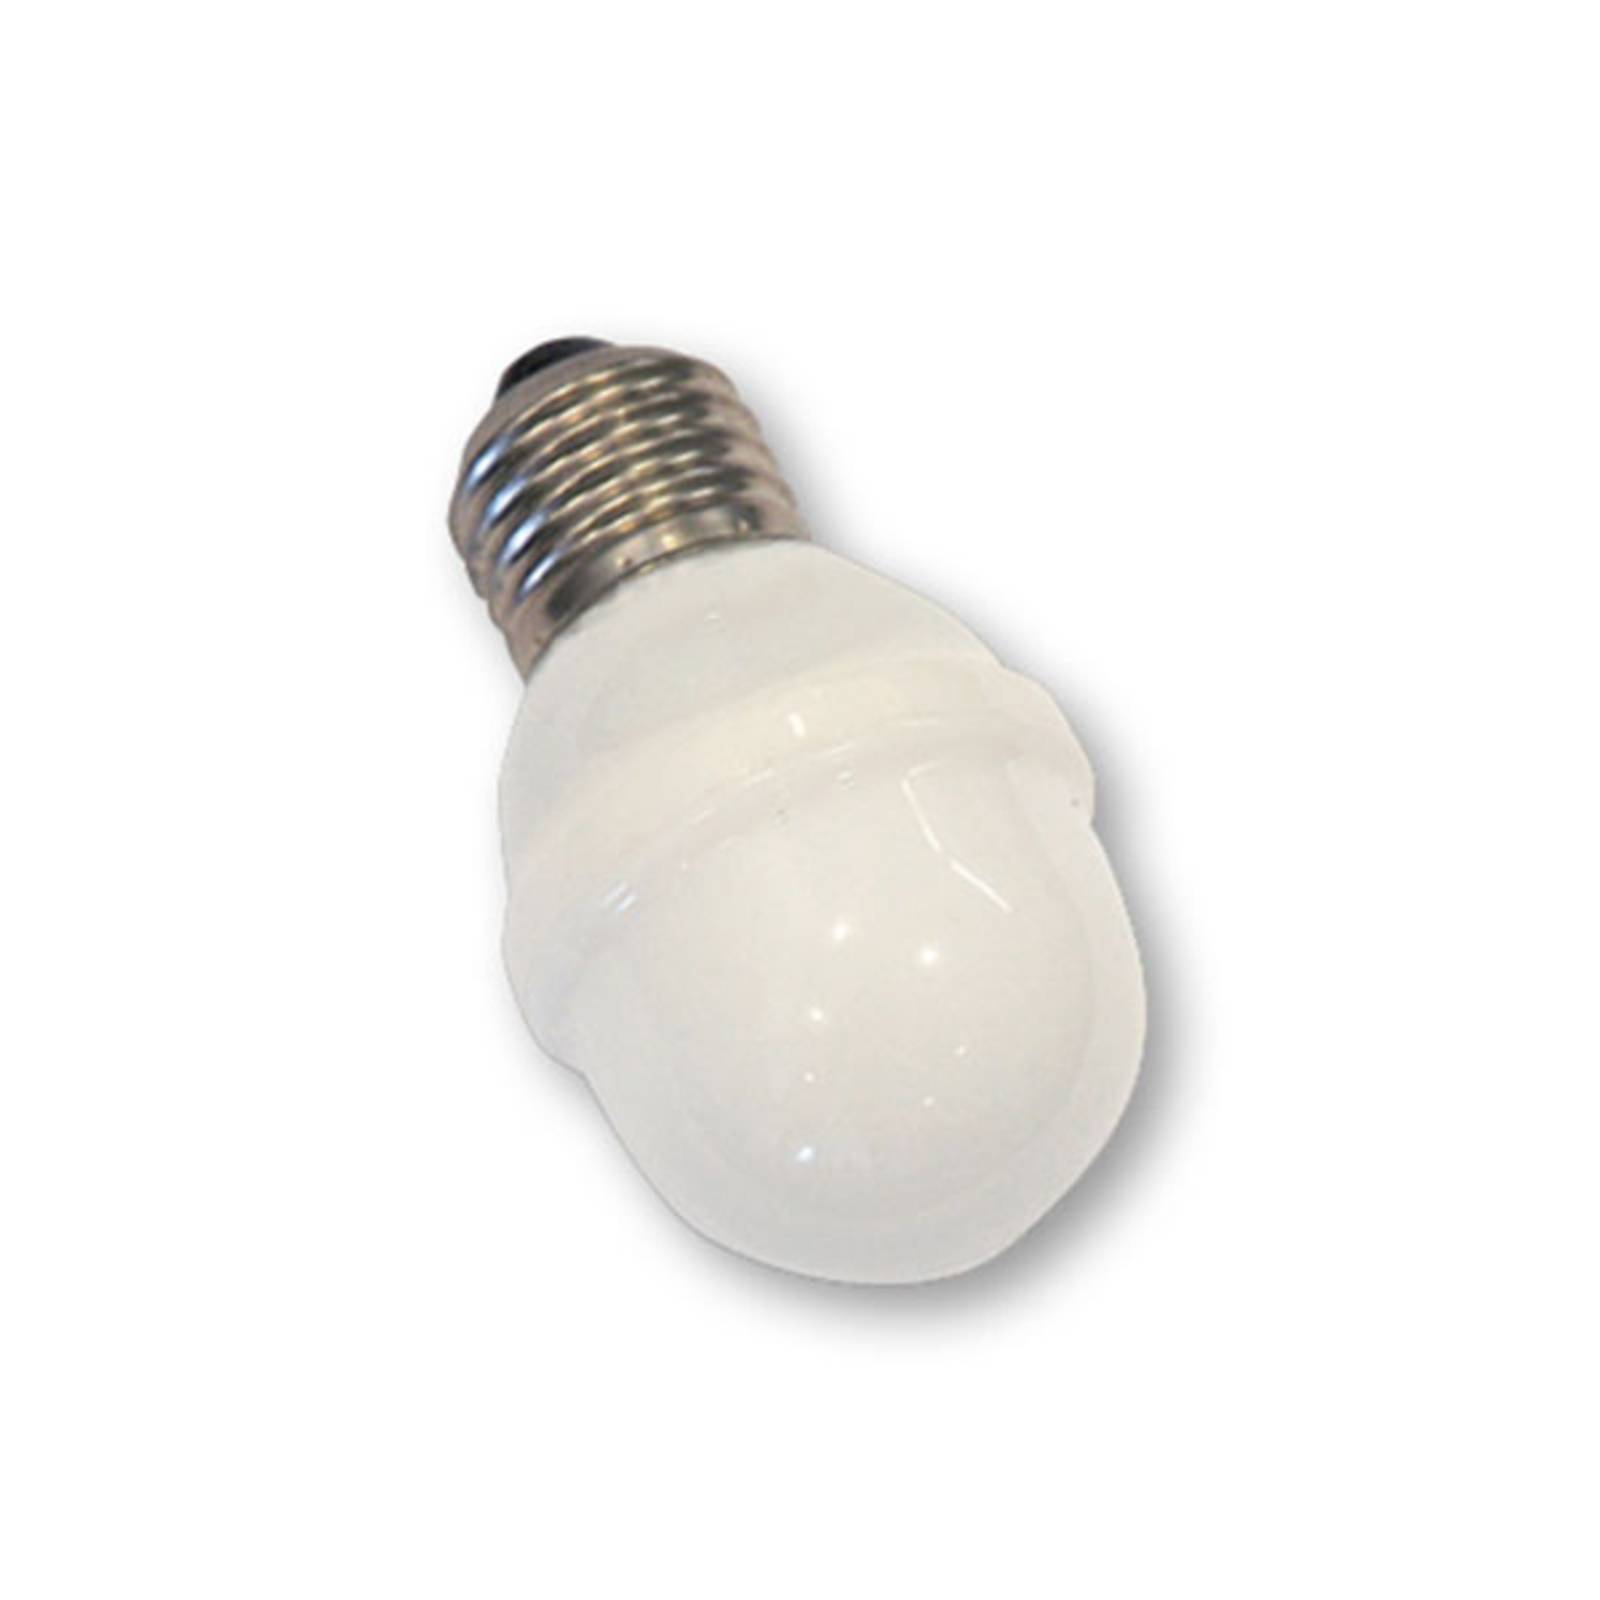 Rotpfeil E27 ampoule balle golf 1 W 5,5 VA lumière du jour